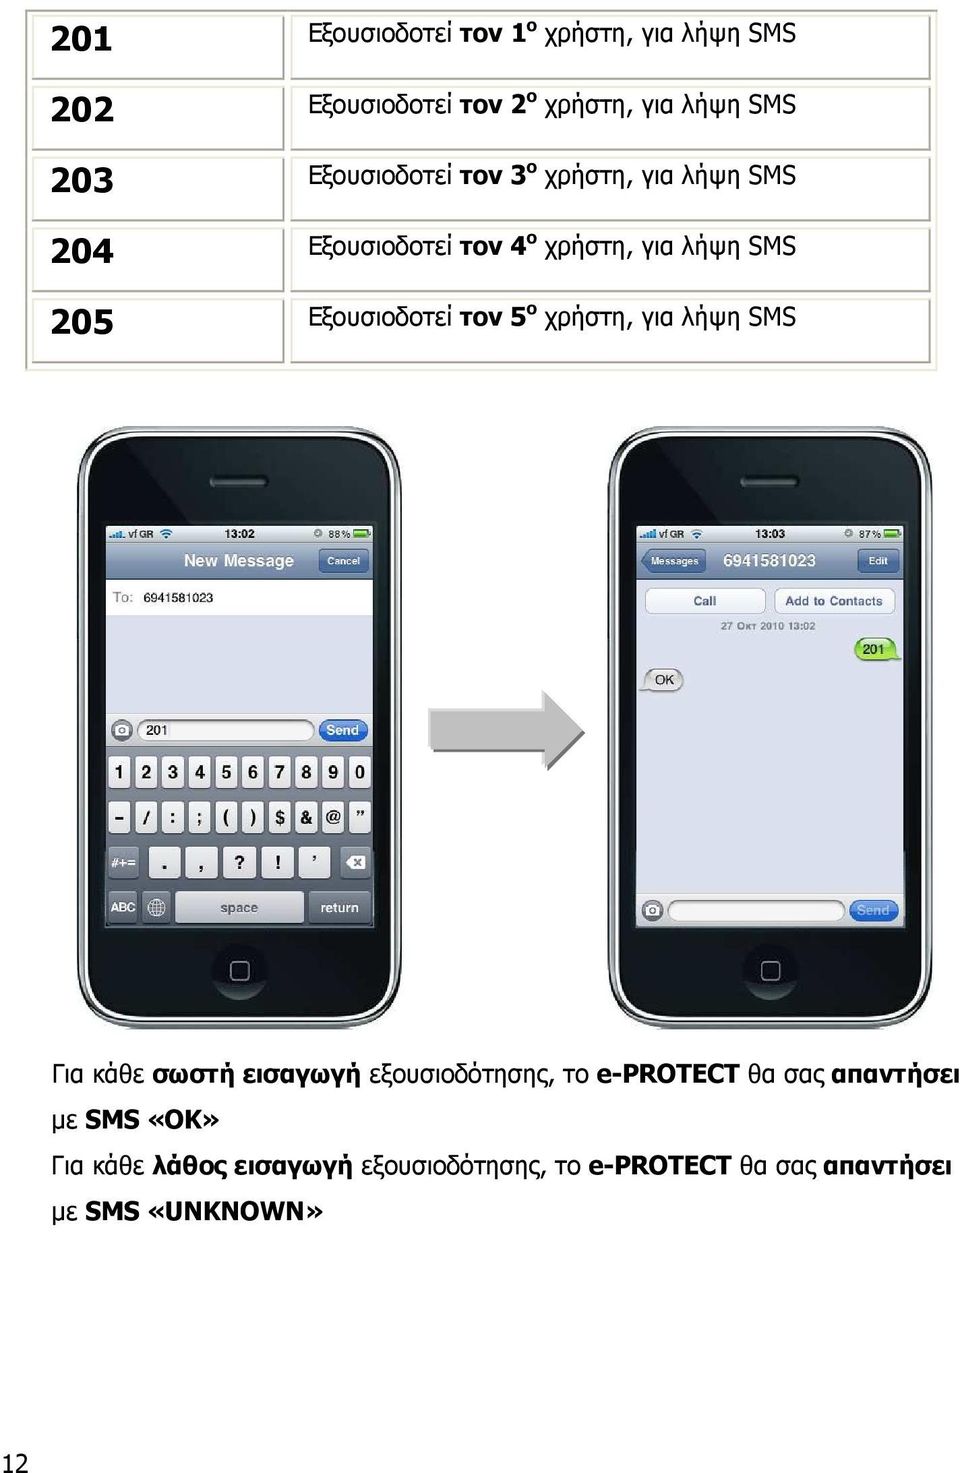 Εξουσιοδοτεί τον 5 ο χρήστη, για λήψη SMS Για κάθε σωστή εισαγωγή εξουσιοδότησης, το e-protect θα